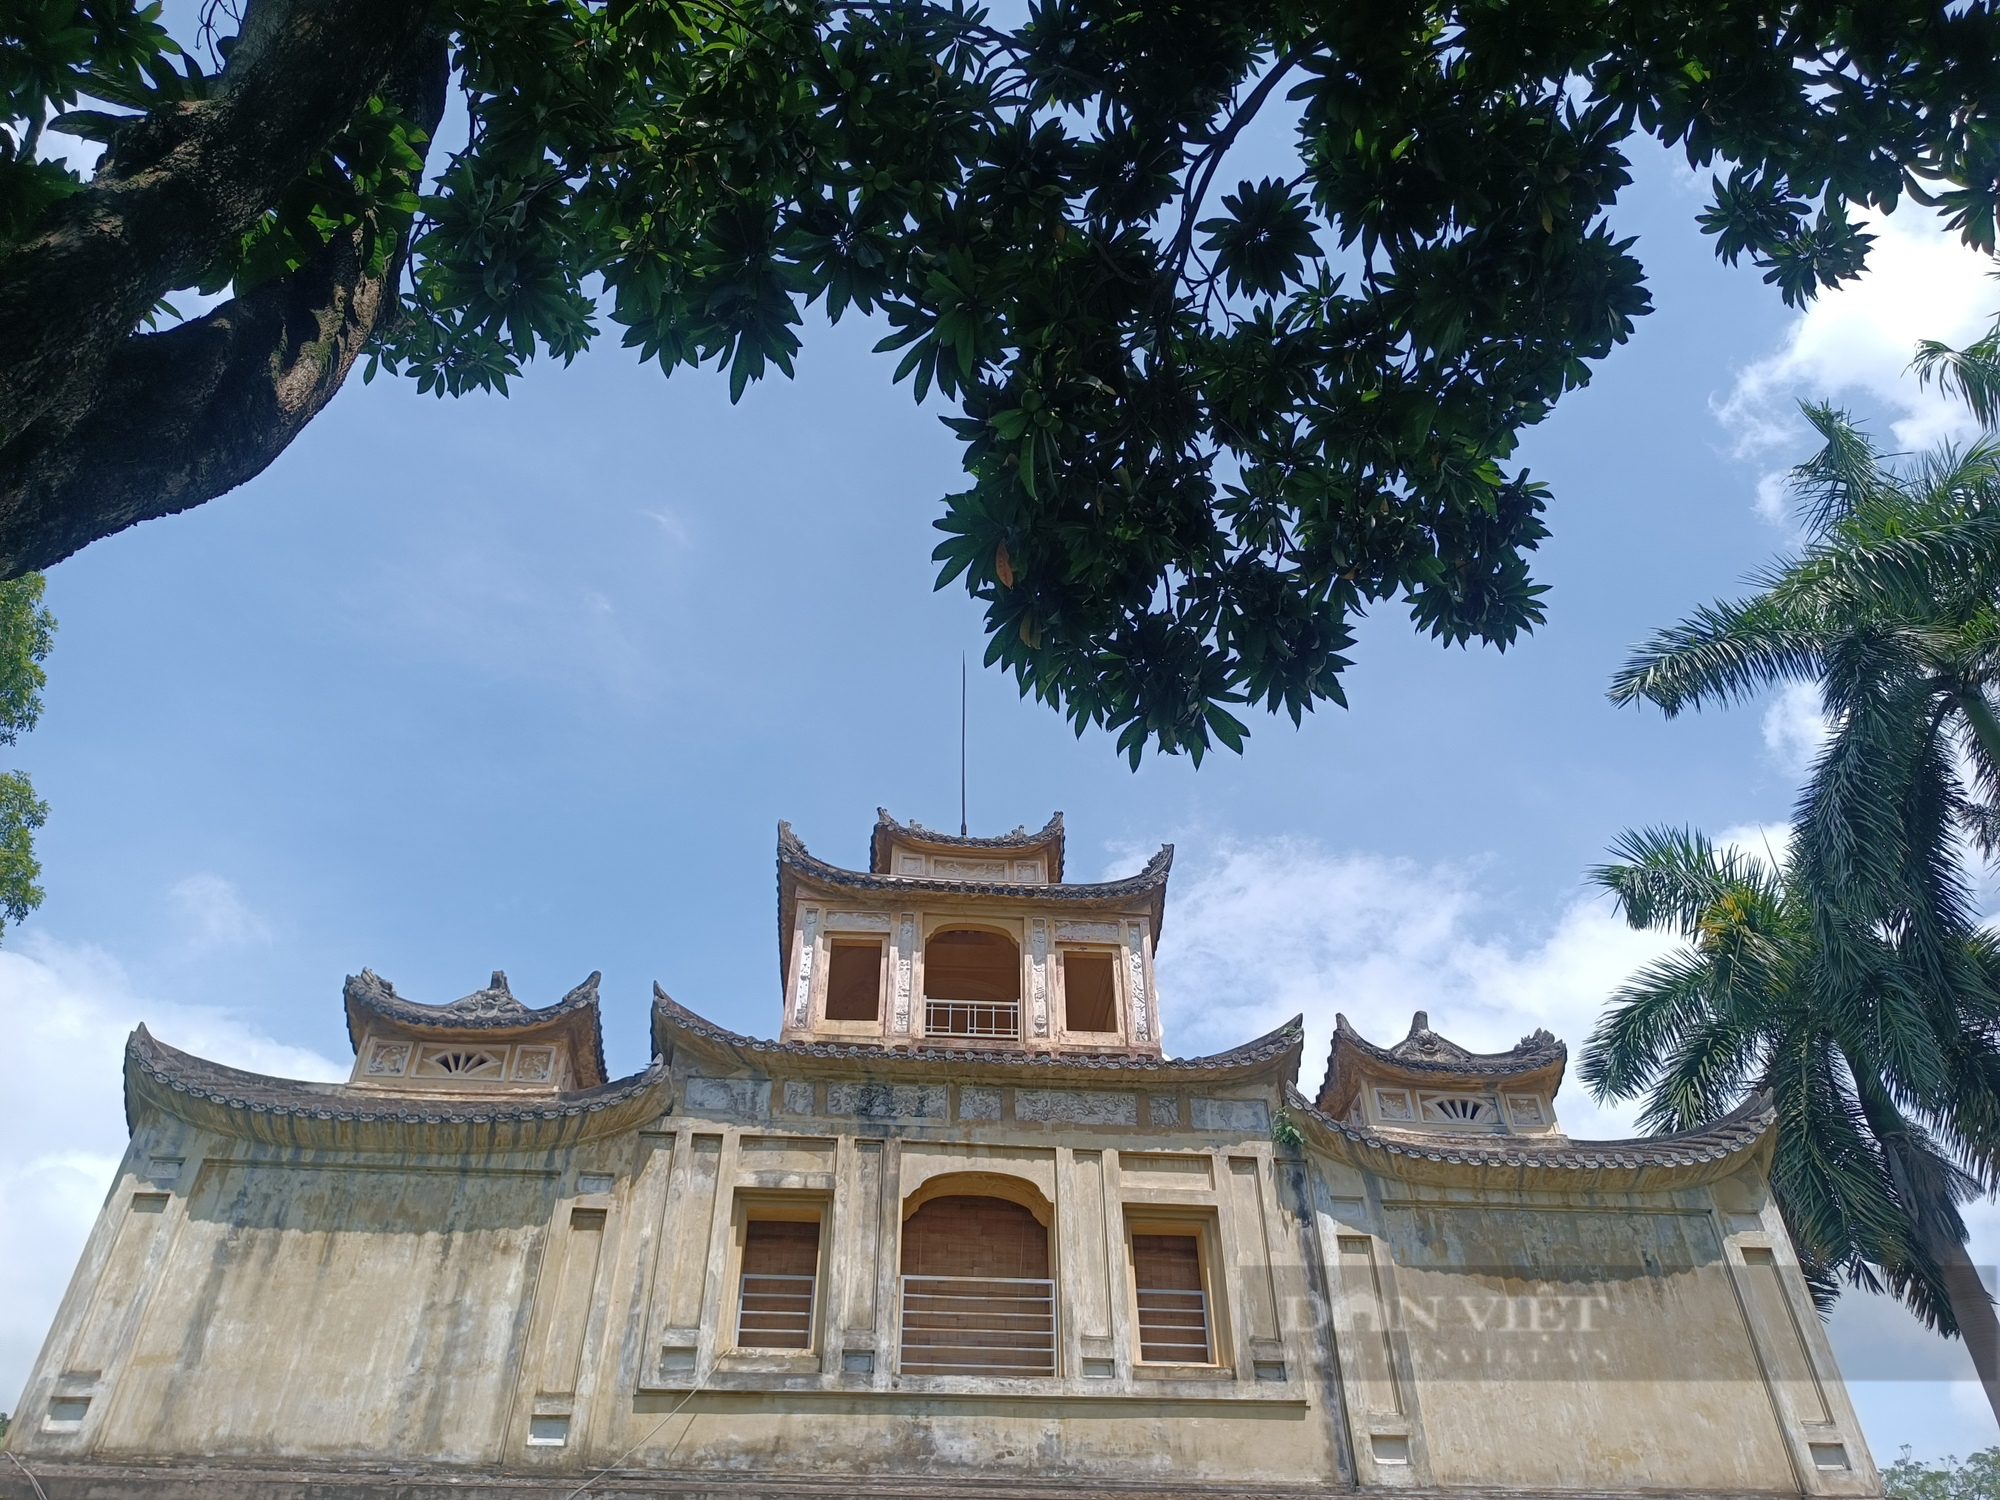 Điều ít biết về cung điện dành cho công chúa thời nhà Nguyễn ở Hà Nội - Ảnh 9.